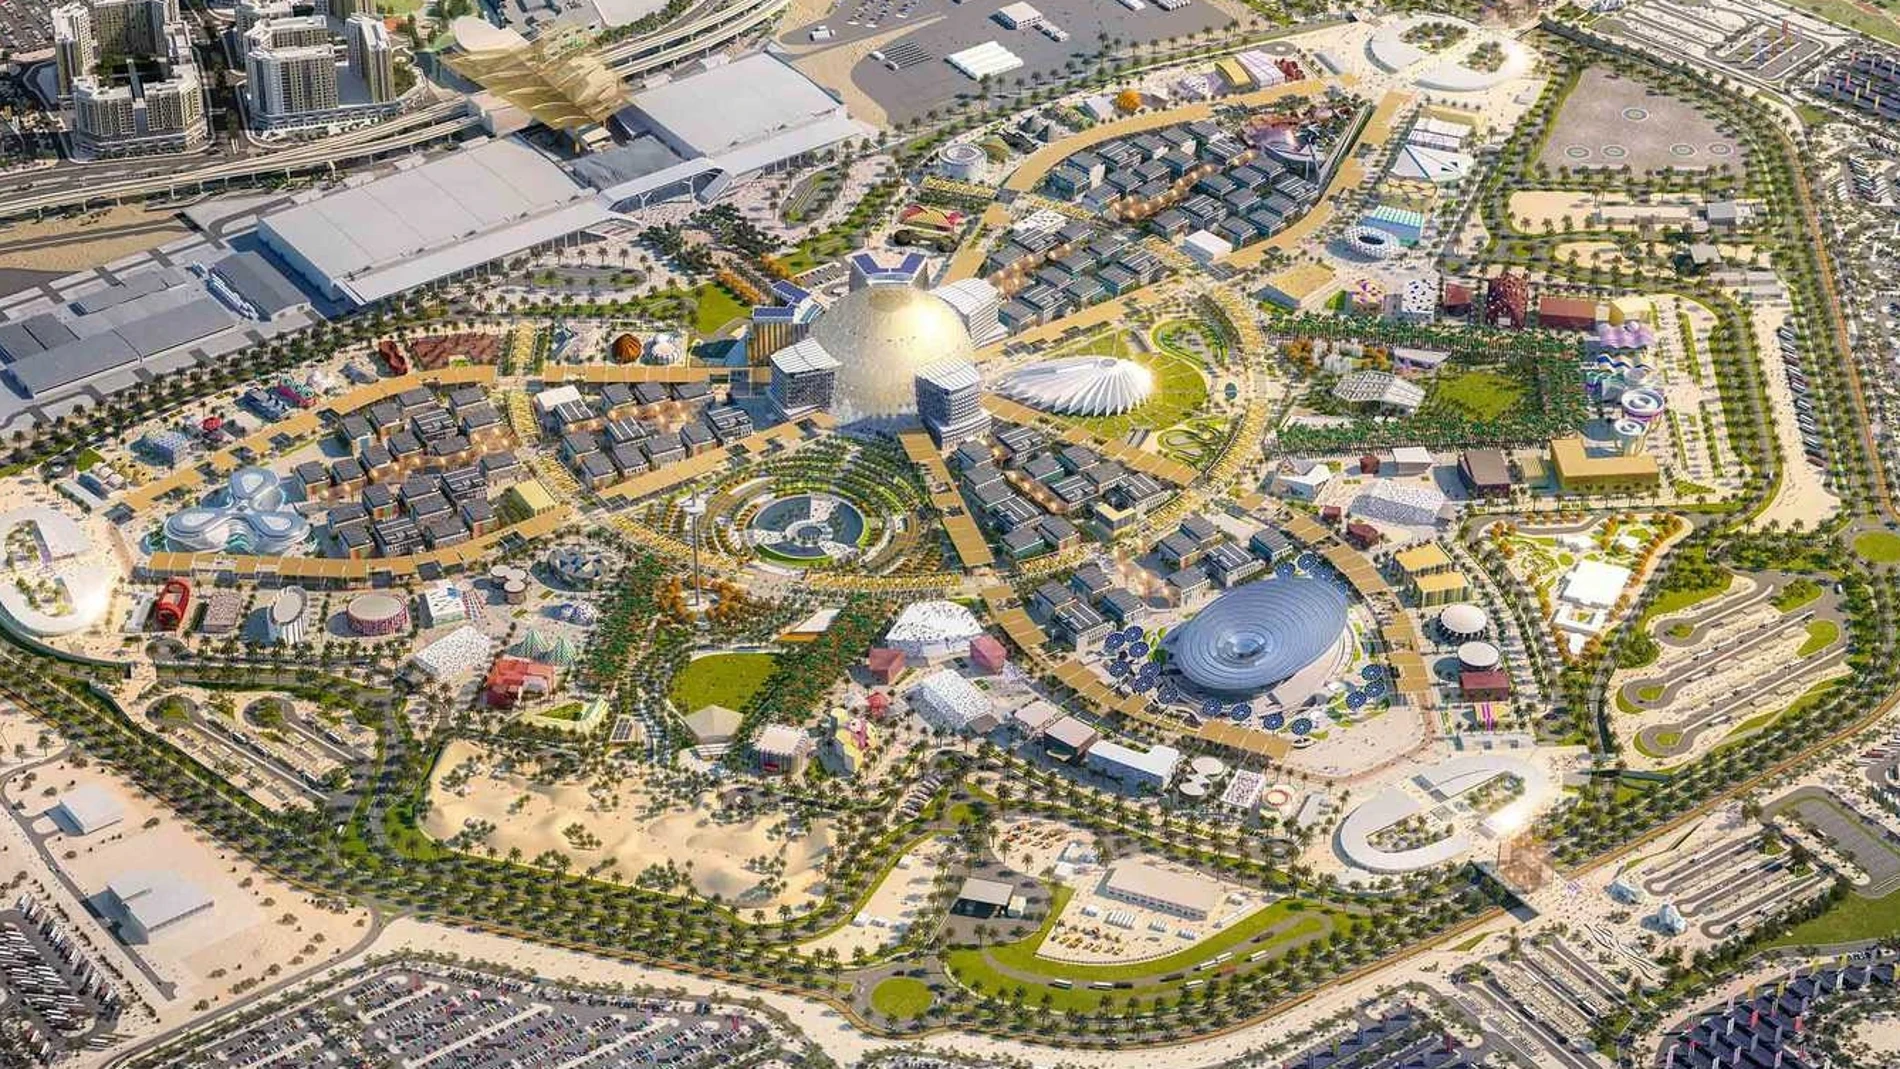 Expo Dubái 2020